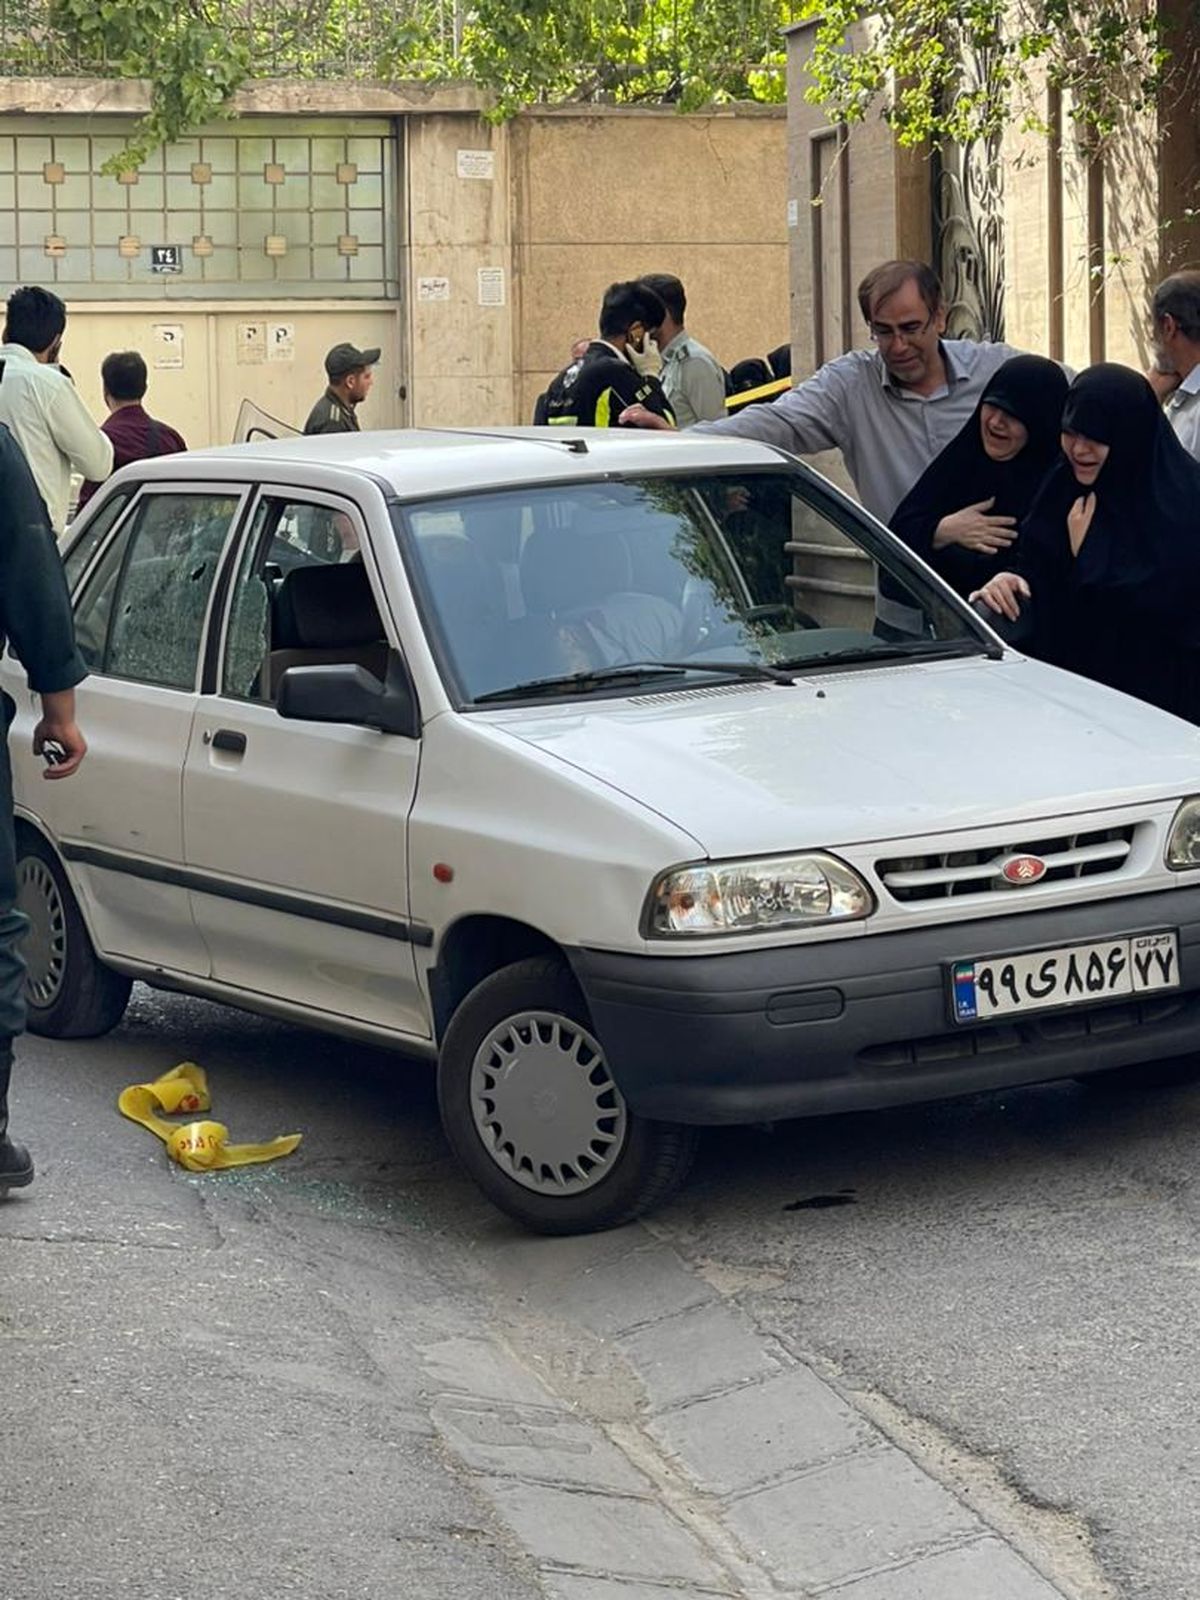 ترور سرهنگ پاسدار در خیابان مجاهدین اسلام + عکس